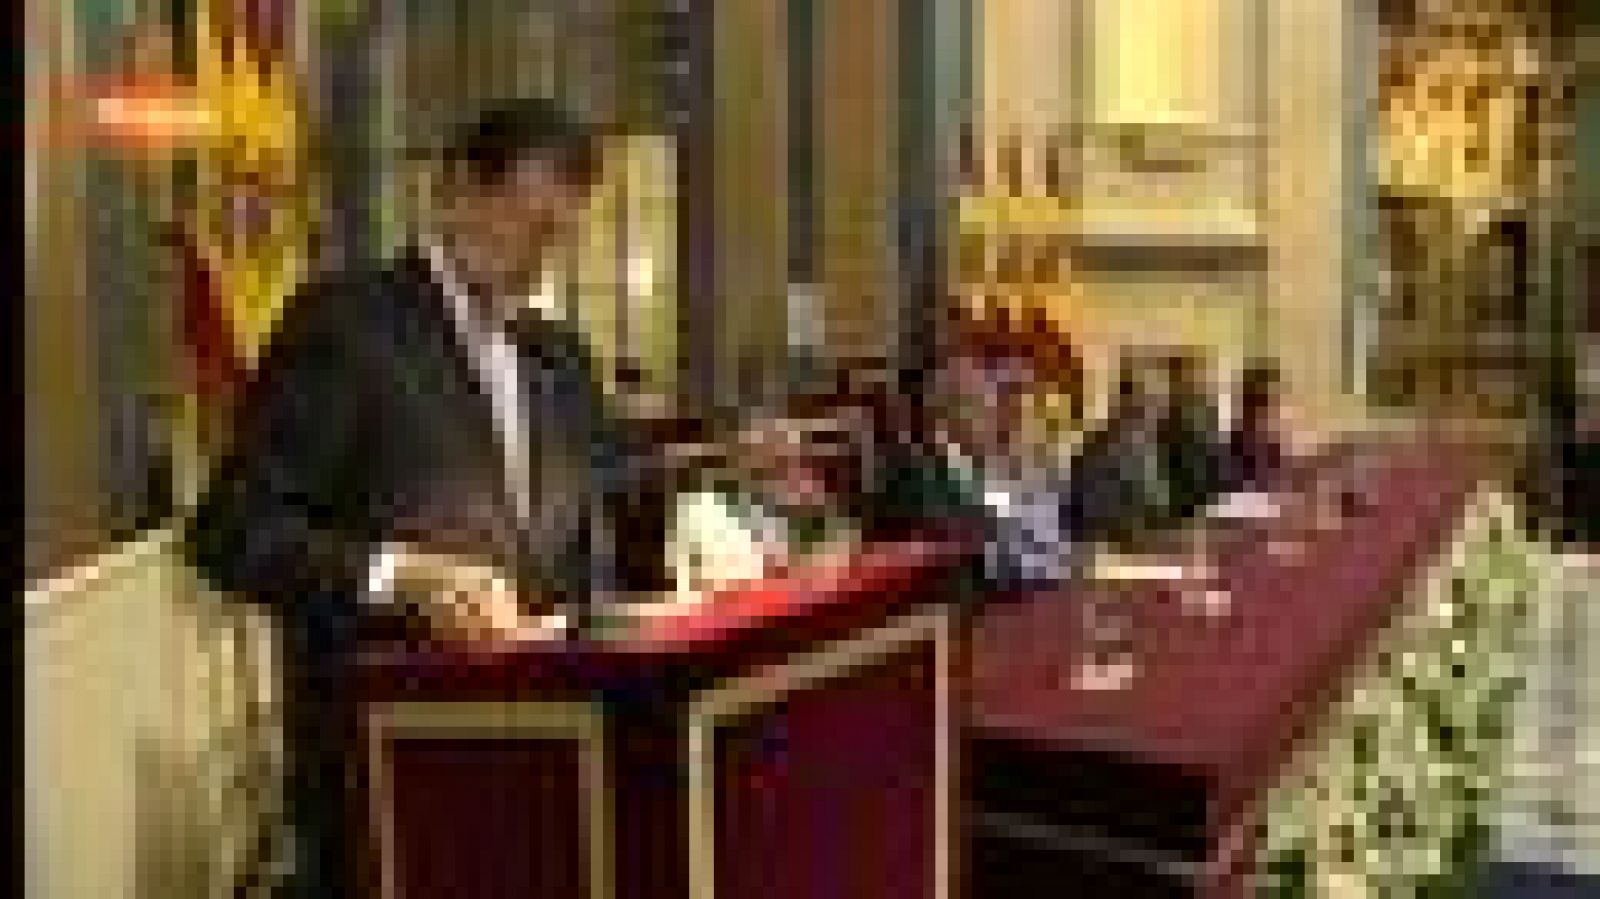 El presidente del Gobierno, Mariano Rajoy, se ha referido al ejemplo de los diputados que hace doscientos años redactaron y promulgaron en tiempos difíciles la Constitución de 1812 para afirmar que "en tiempos de crisis no hay que tener miedo a las reformas".